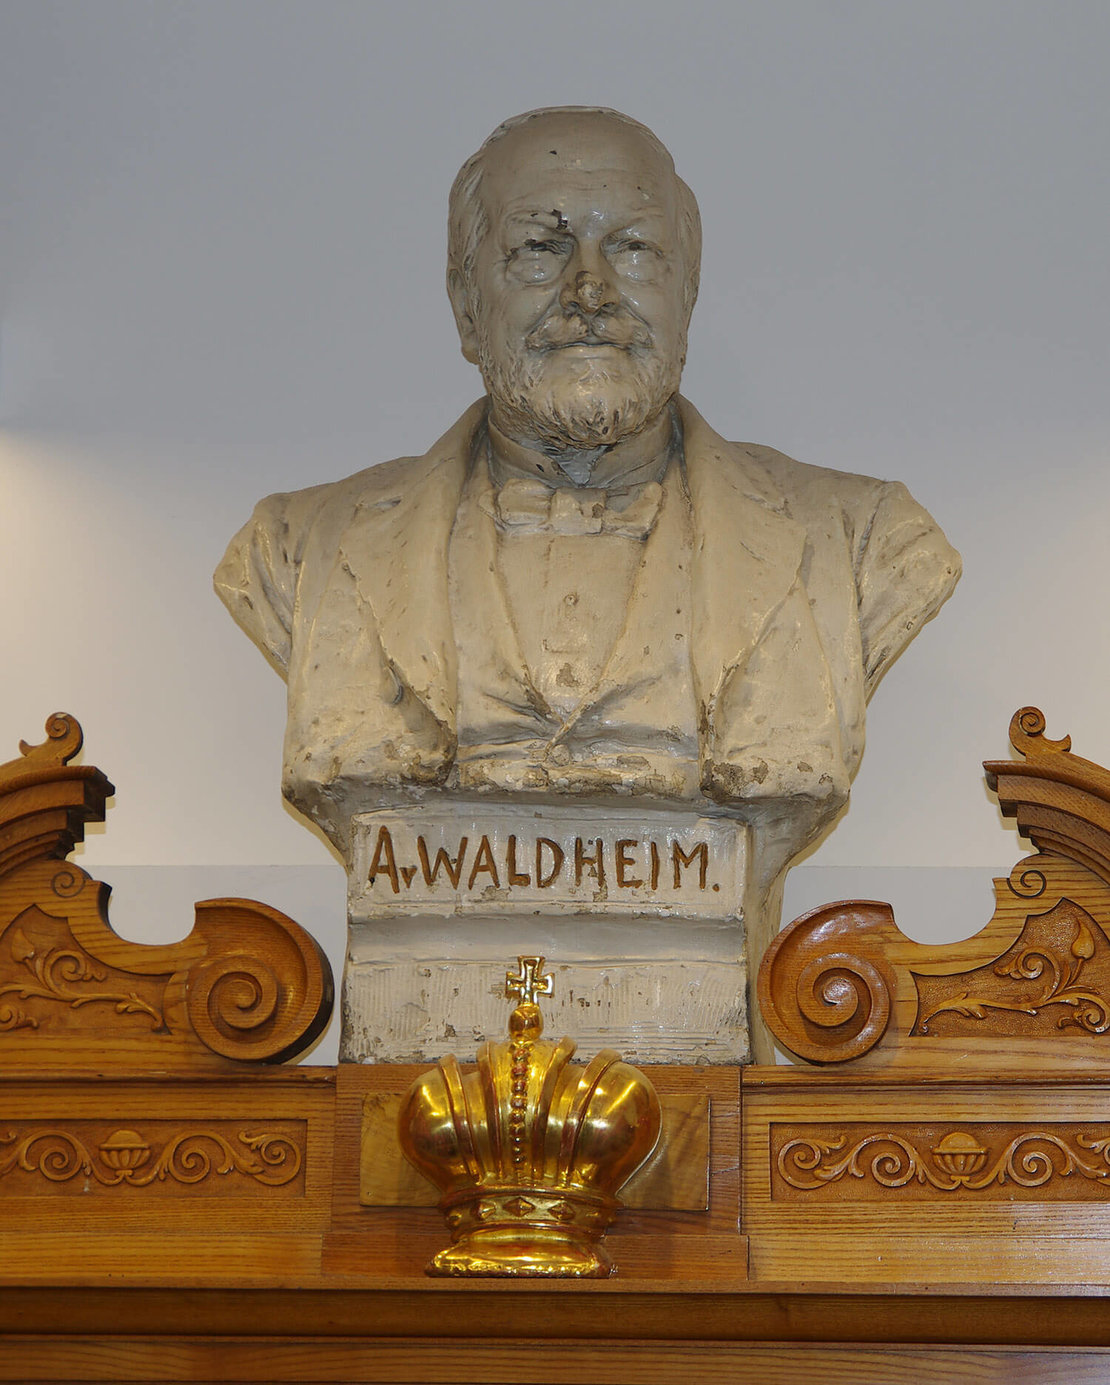 Anton Schürer von Waldheim: Gipsbüste von Edmund Hellmer, 1894, in der Apotheke zur goldenen Krone, Himmelfportgasse 7, Foto: Andreas Winkel, 2022 